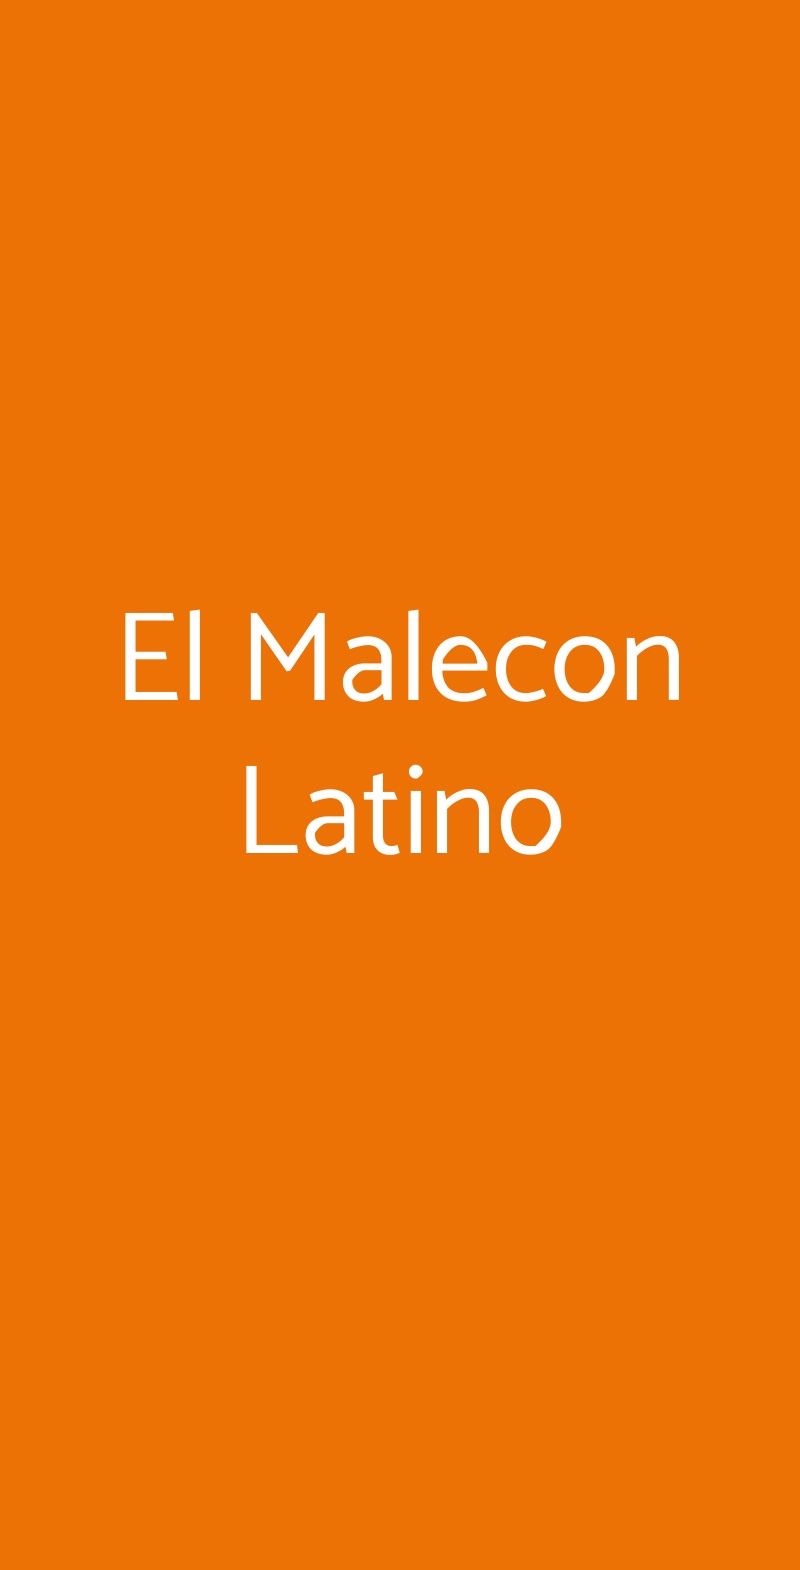 El Malecon Latino Torino menù 1 pagina